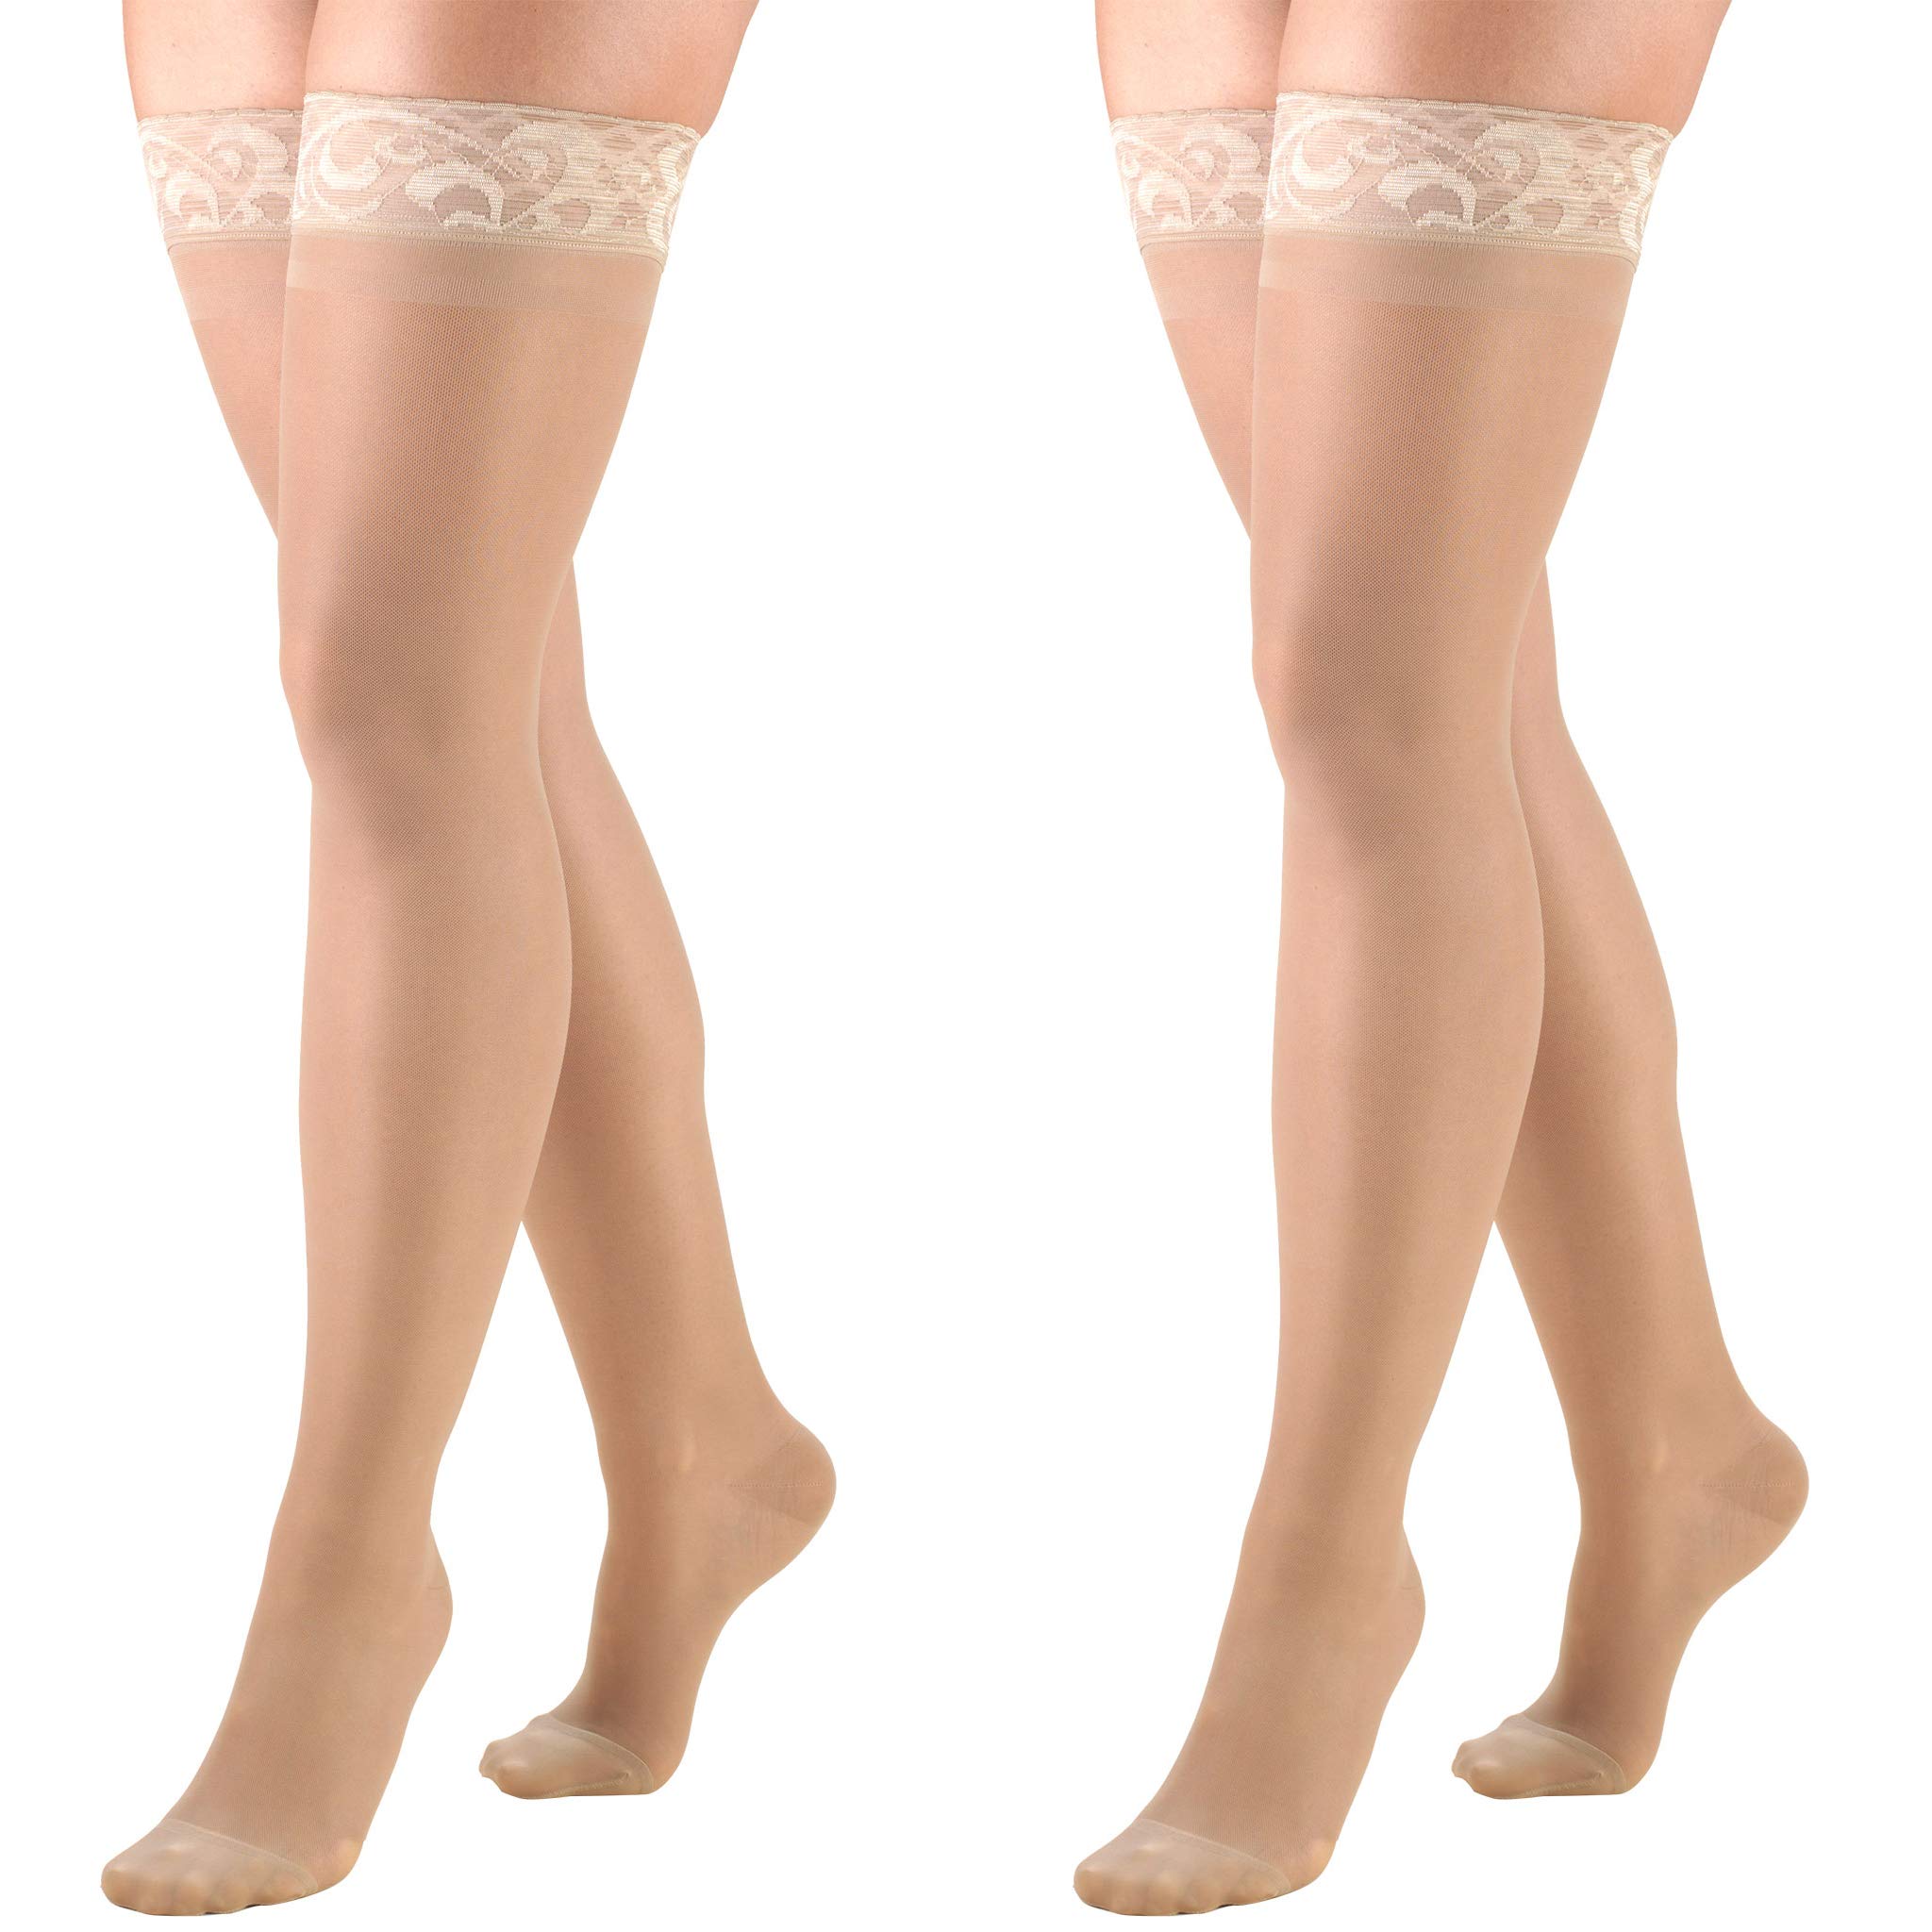 Women's Stockings, Knee High, Sheer: 30-40 mmHg, Taupe, Medium 